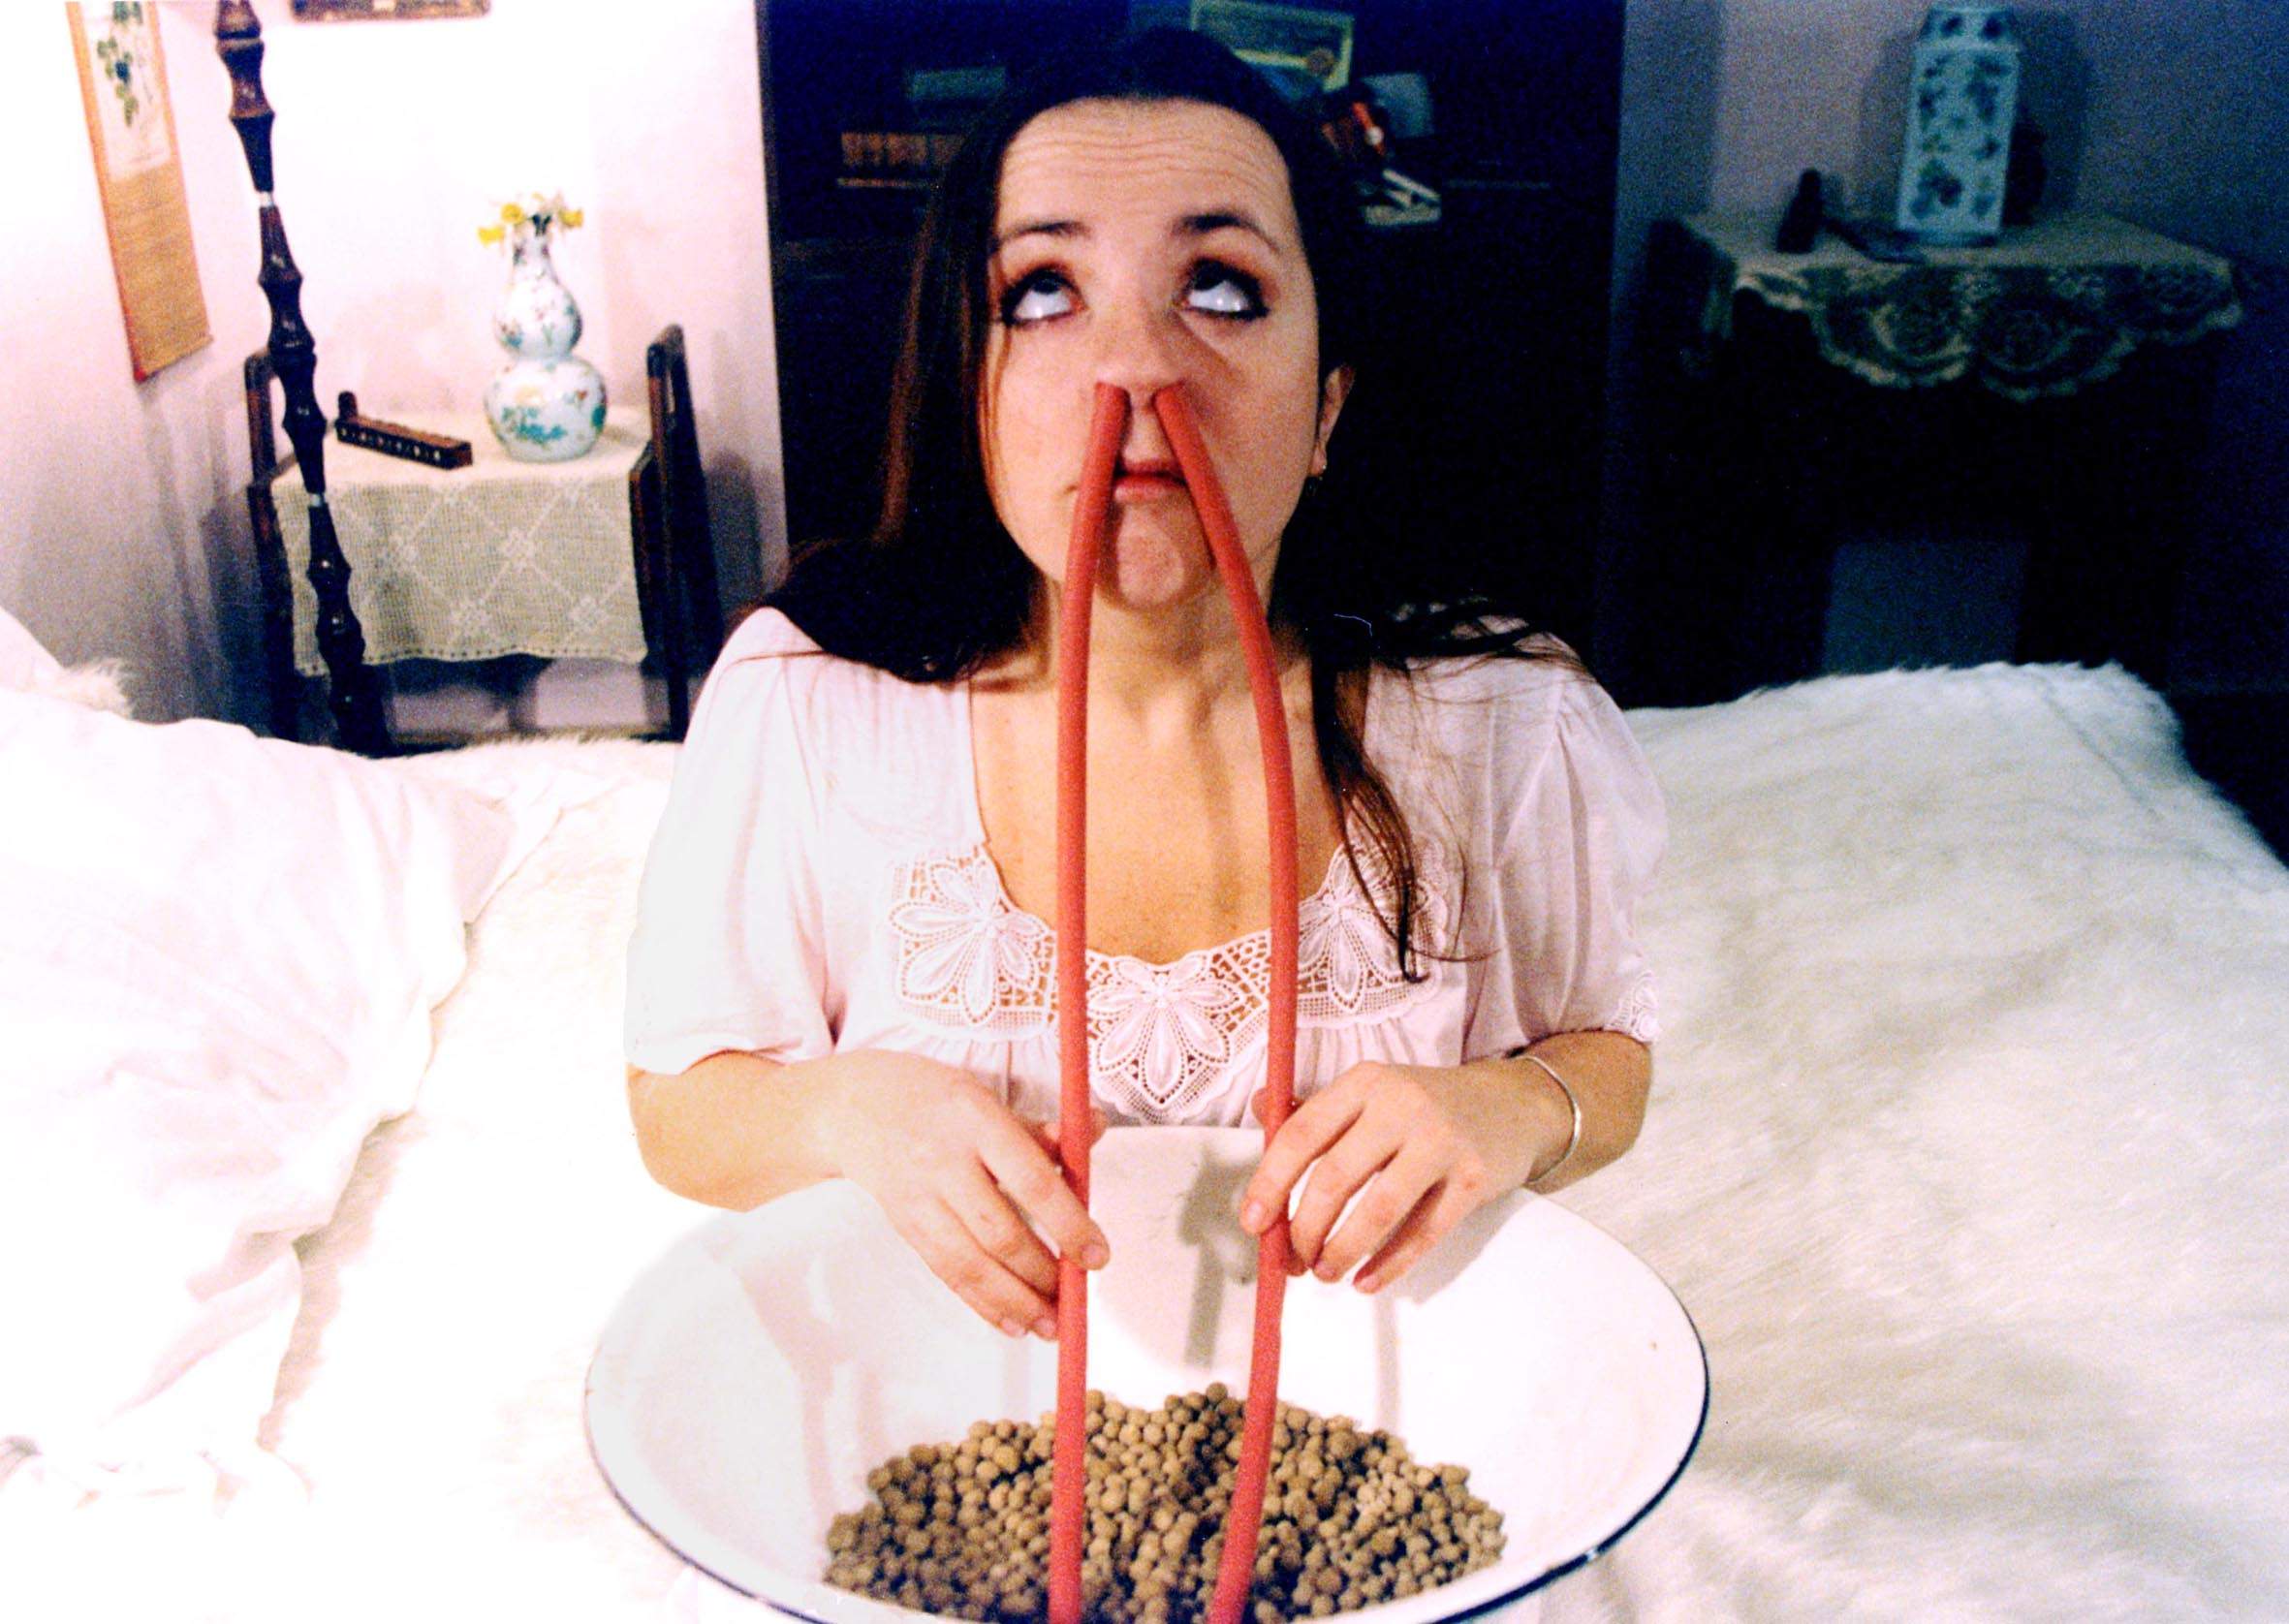 Barbora Hrzanova develops an unusual fetish for inhaling balls of bread up her nose in Conspirators of Pleasure (1996)